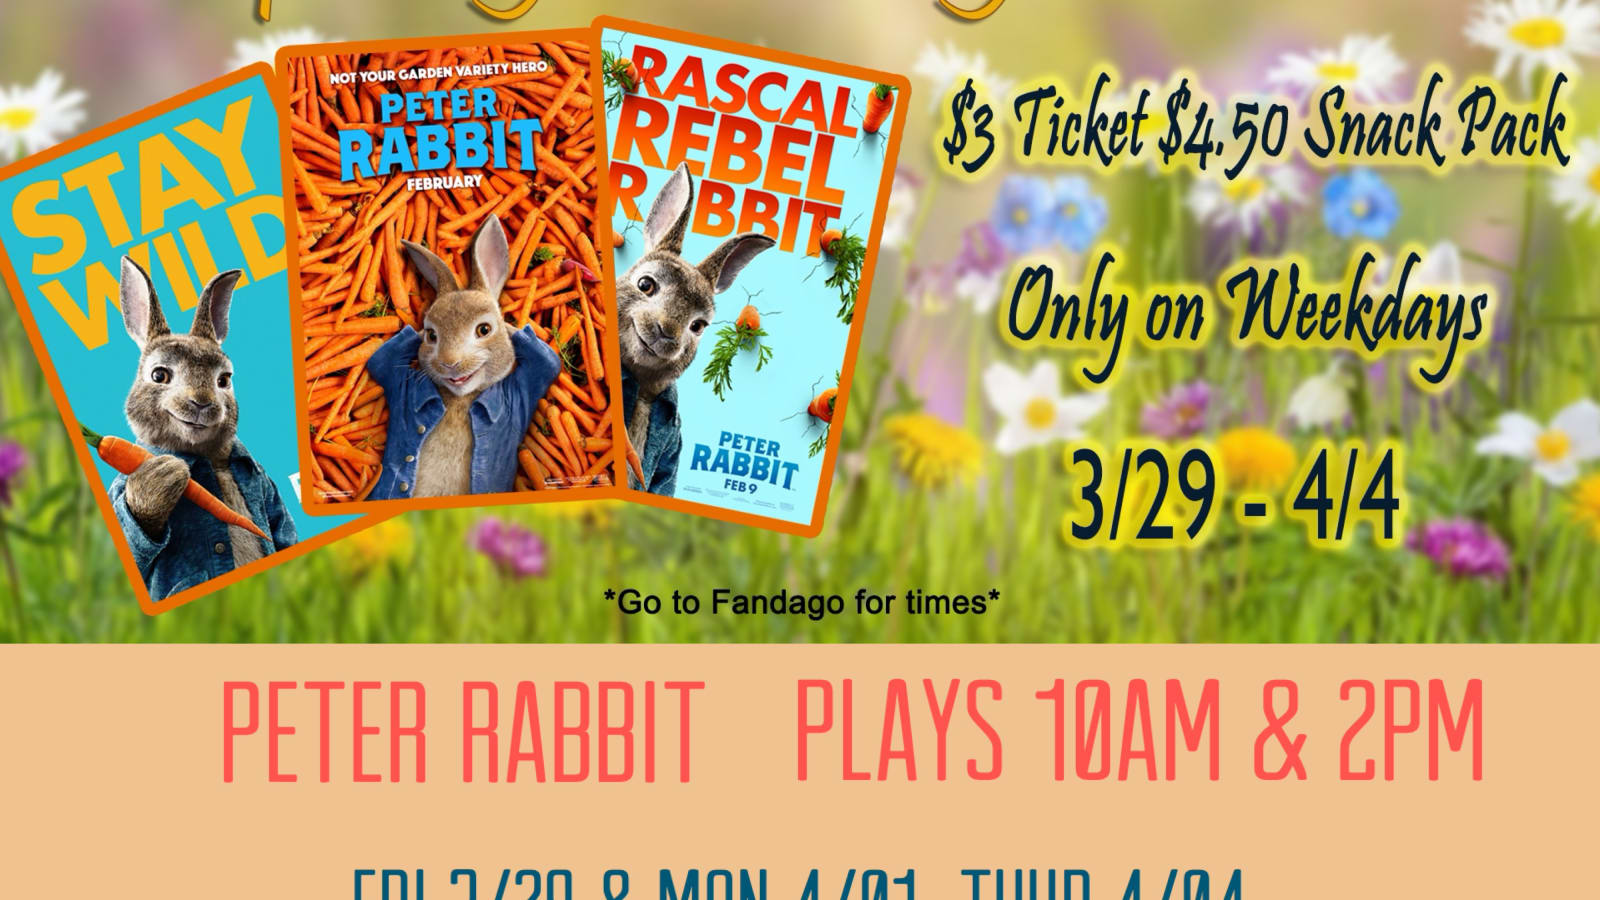 $ 3.00 --Peter Rabbit at Aurora Cineplex-Spring Bk